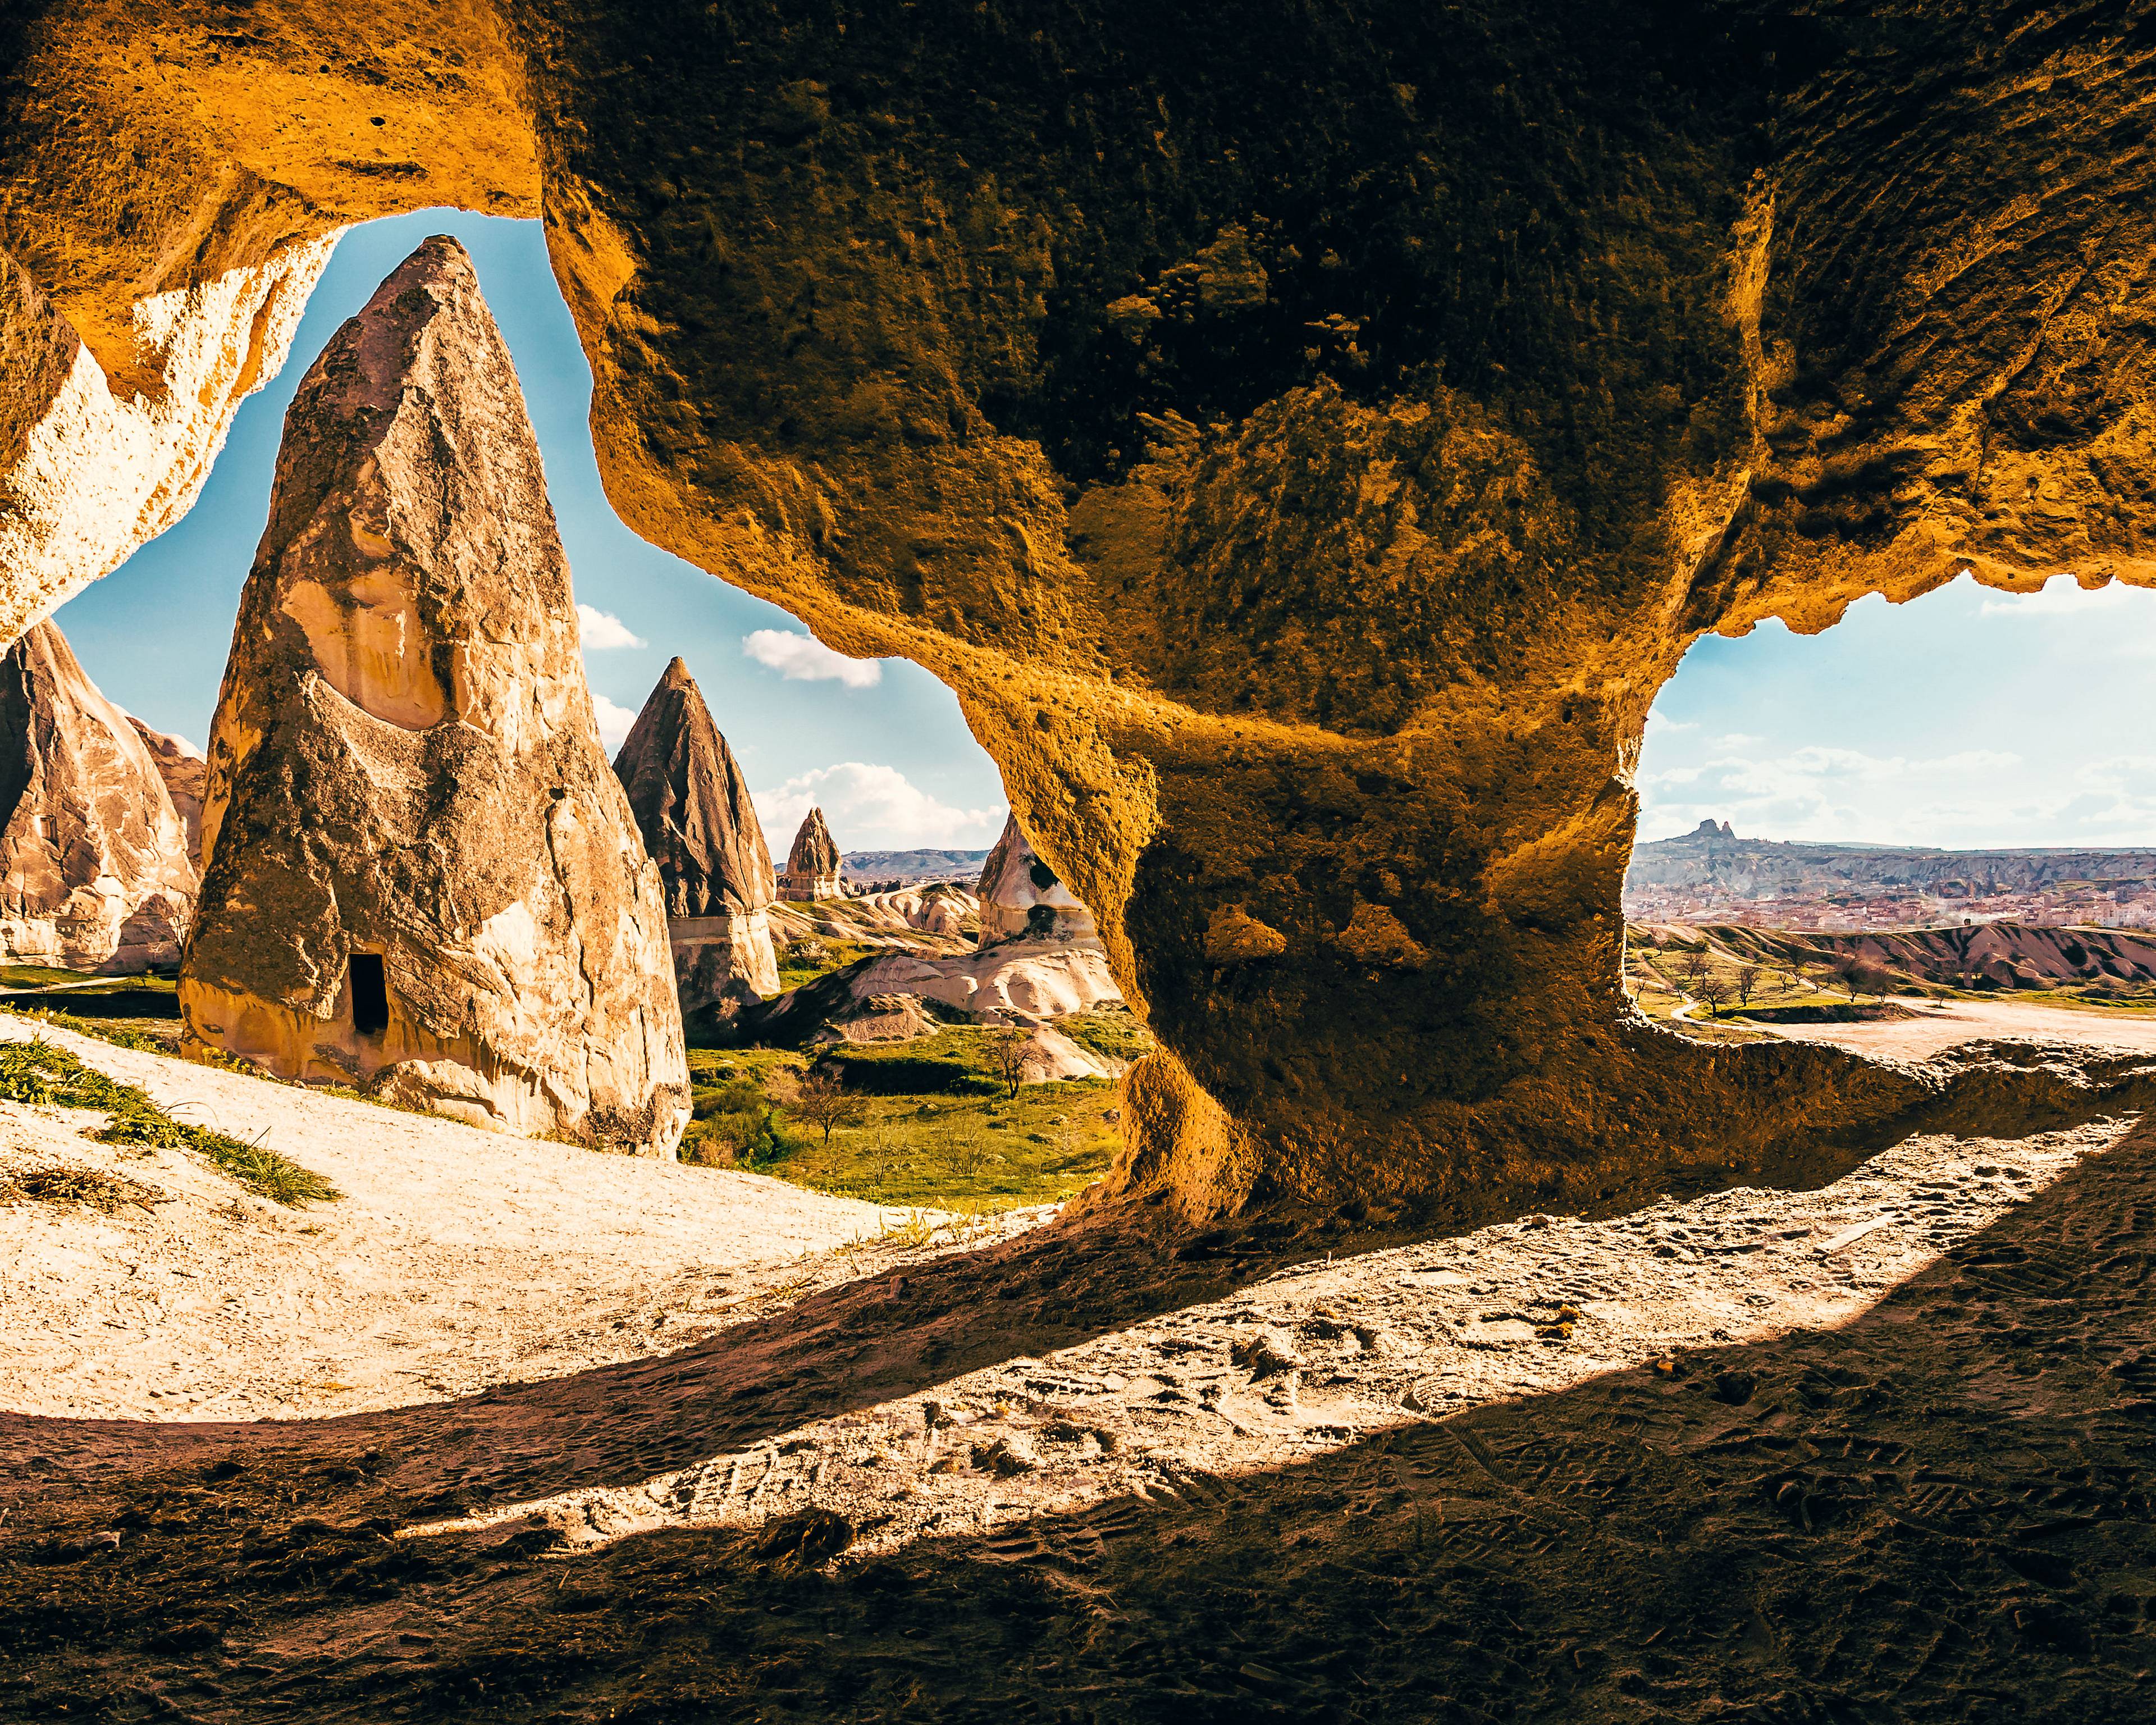 Istanbul et Cappadoce : entre capitale millénaire et paysages lunaires